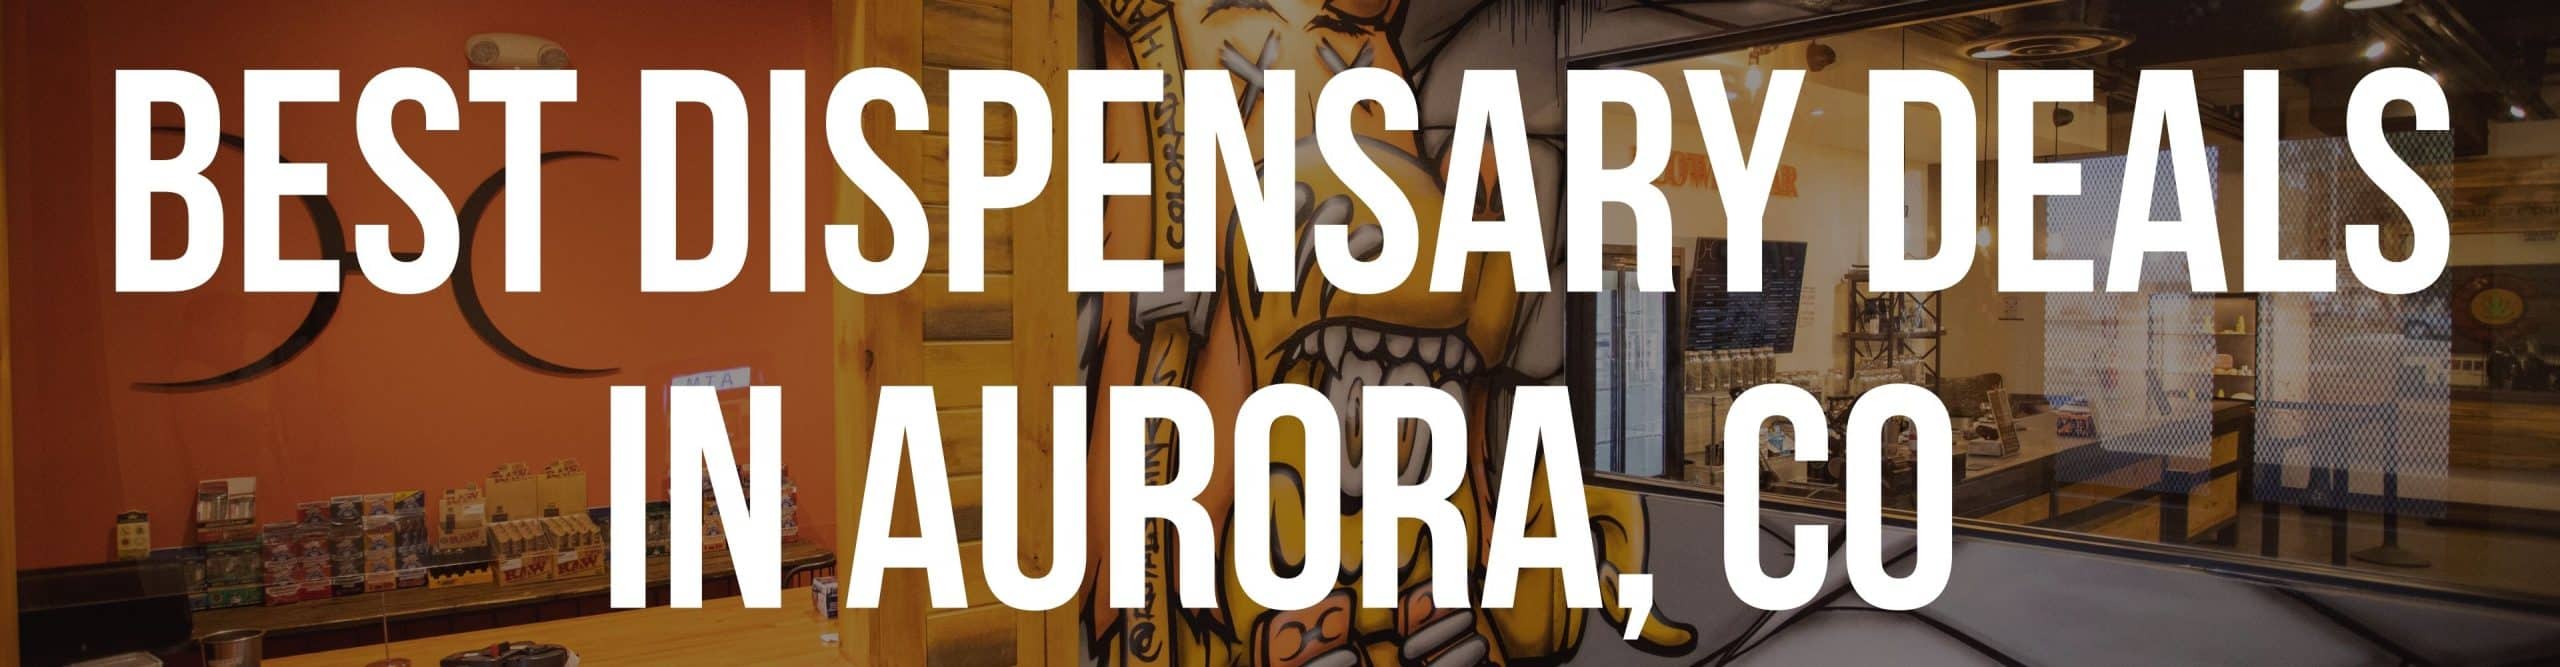 Best Dispensary Deals In Aurora